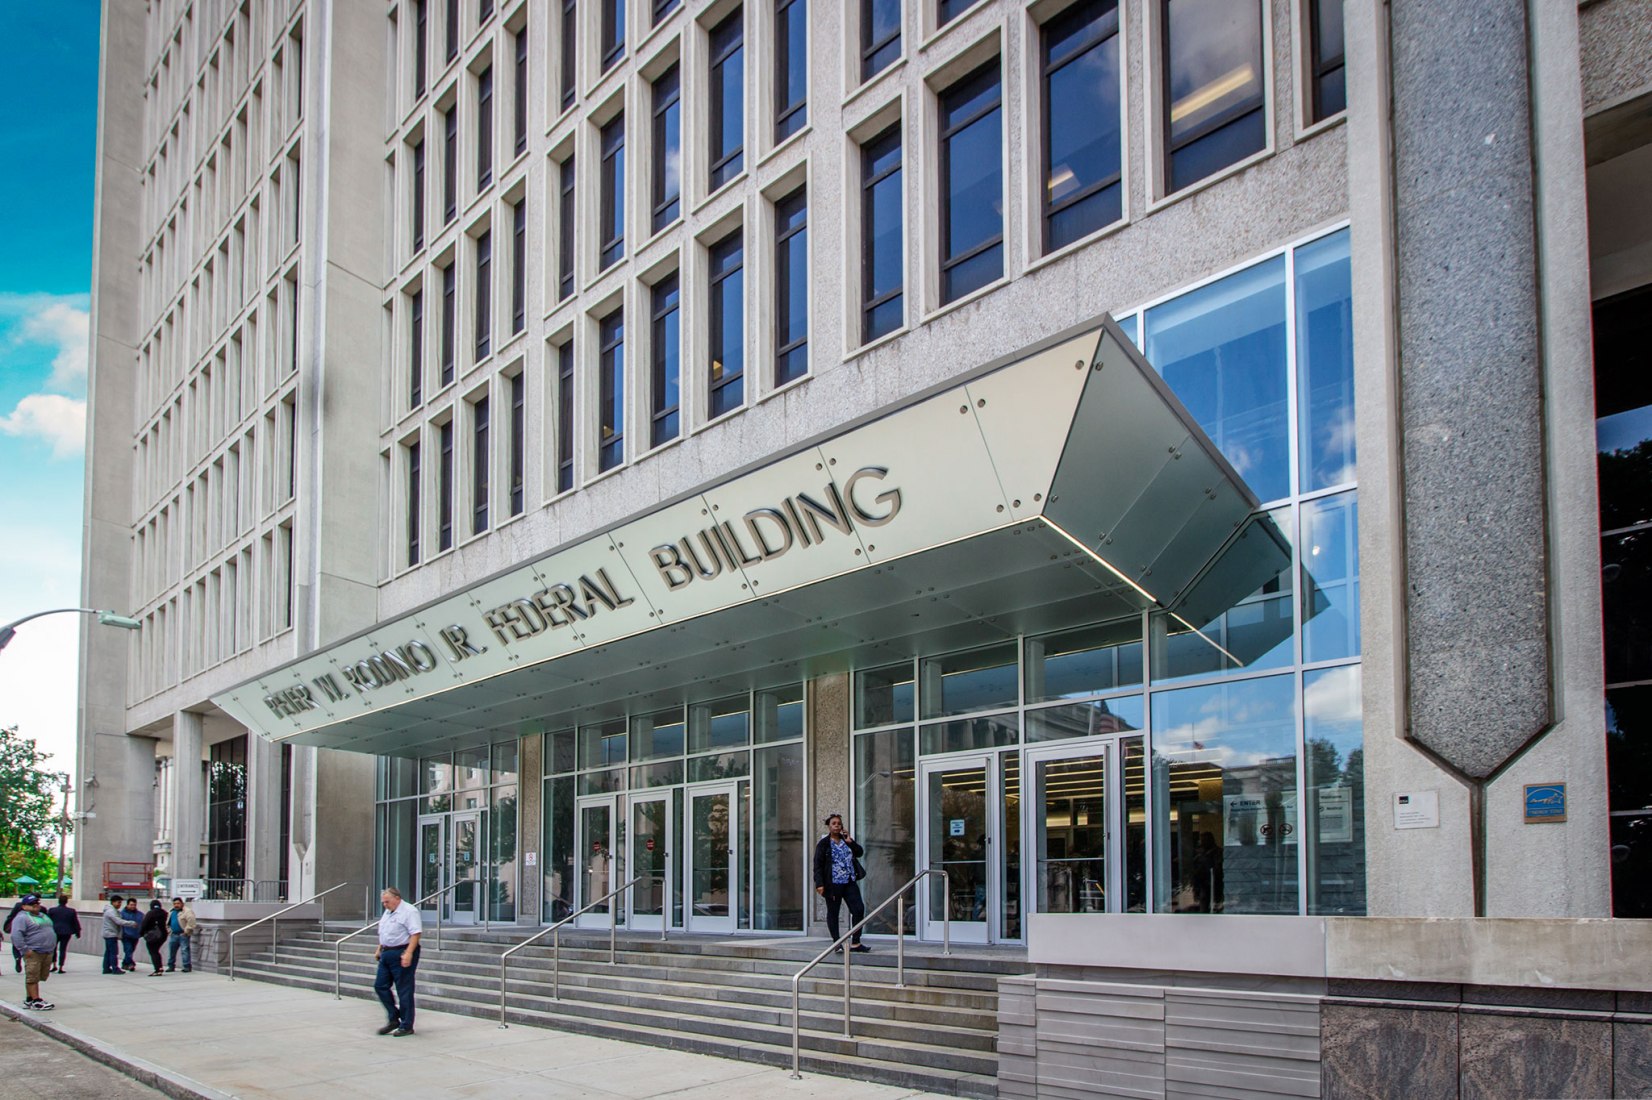 Nuevo vestíbulo en el edificio federal Peter W. Rodino por DCM Architecture & Engineering LLC. Fotografía por Edgar de la Cova